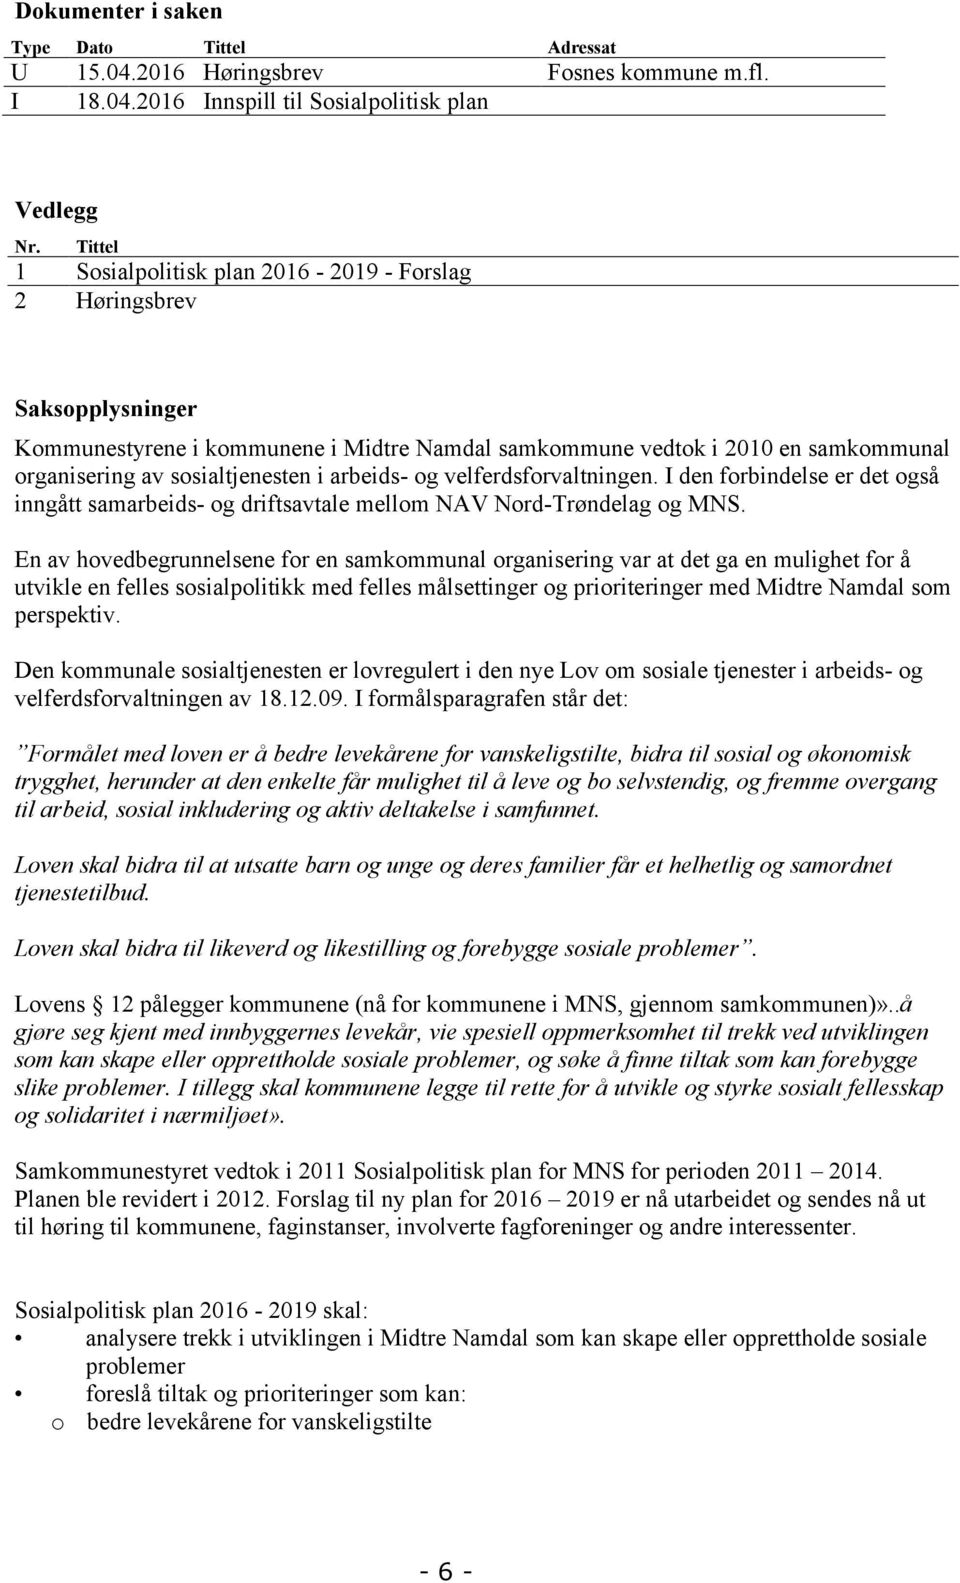 arbeids- og velferdsforvaltningen. I den forbindelse er det også inngått samarbeids- og driftsavtale mellom NAV Nord-Trøndelag og MNS.